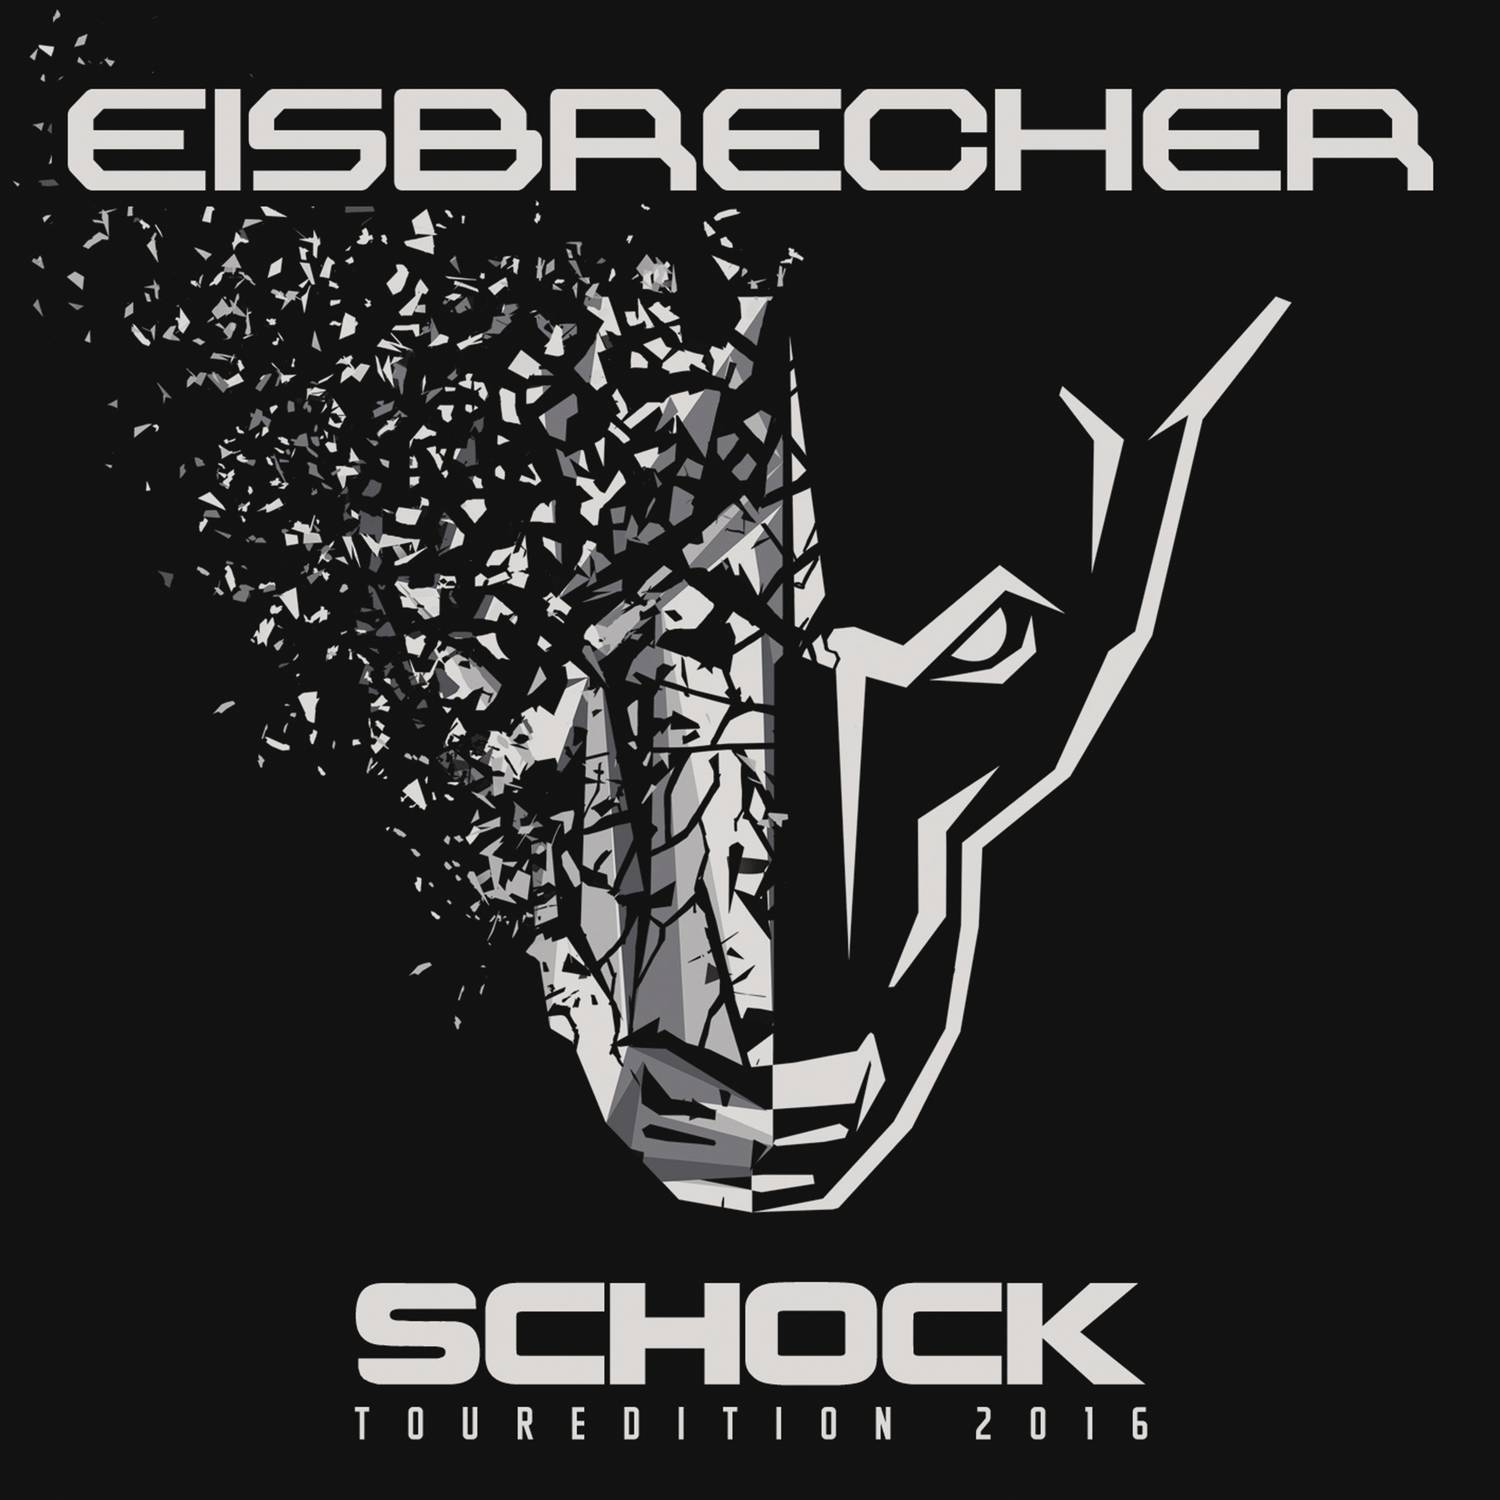 Eisbrecher rot wie. Eisbrecher логотип группы. Eisbrecher Shock обложка. Eisbrecher Eiszeit обложка. Eisbrecher обложки альбомов.